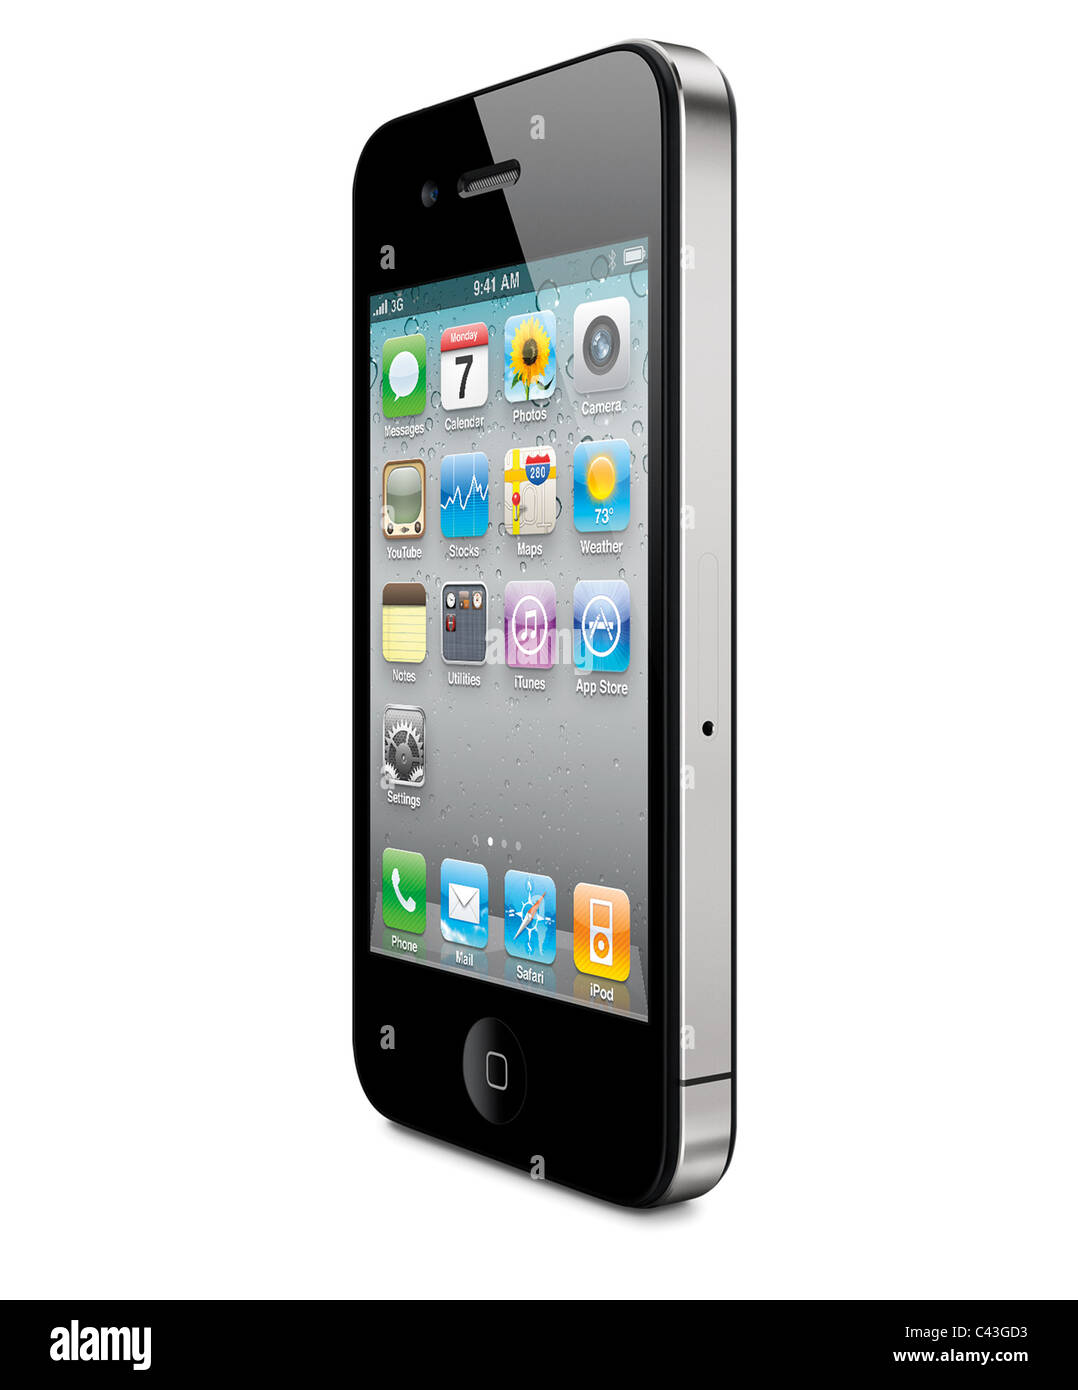 L'iPhone 4 découper la vue perspective, en fond blanc Banque D'Images